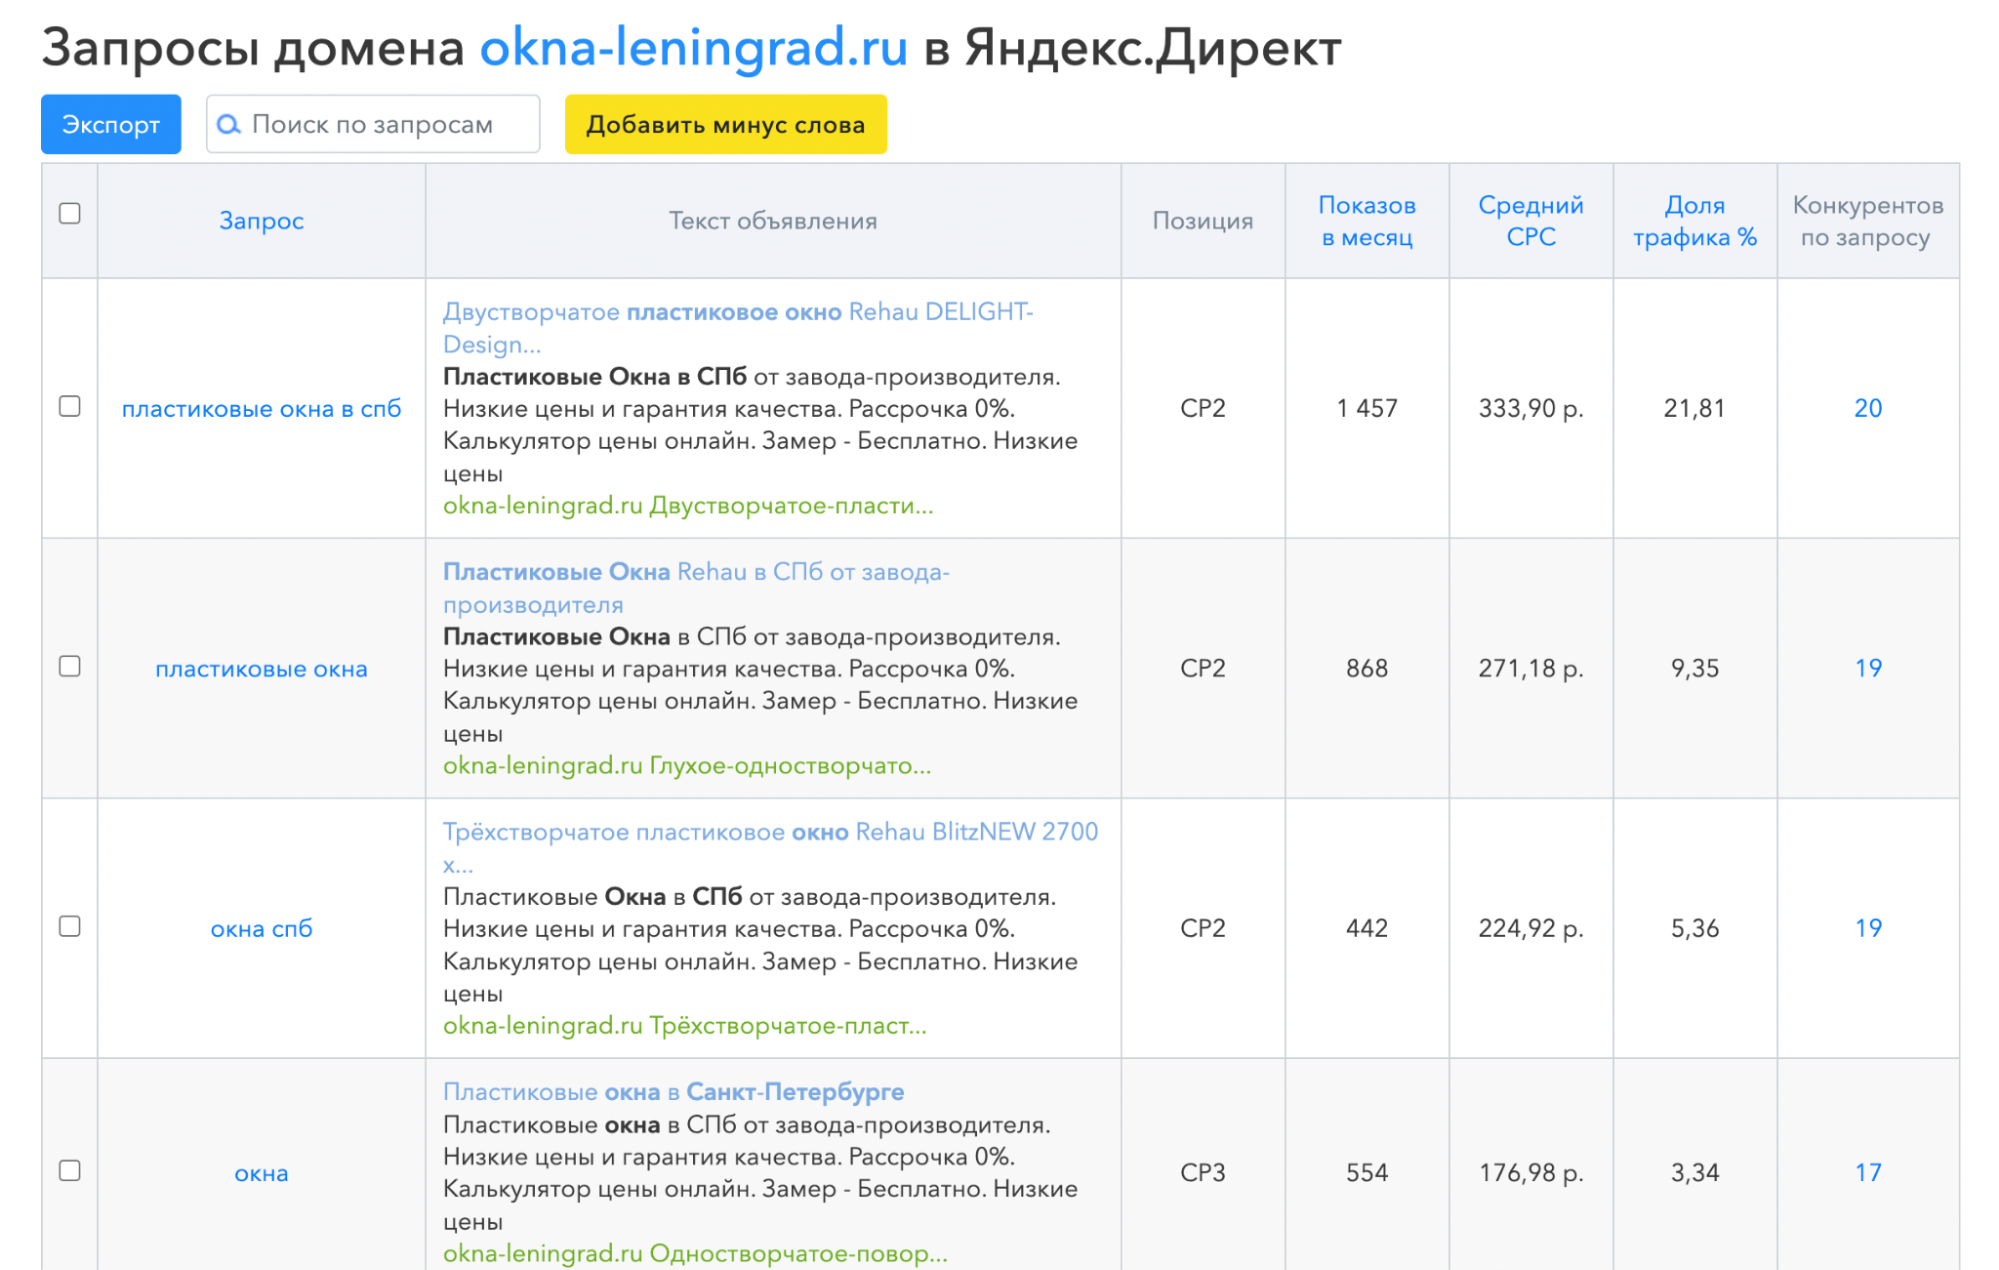 Все запросы по сайту в Яндекс Директе